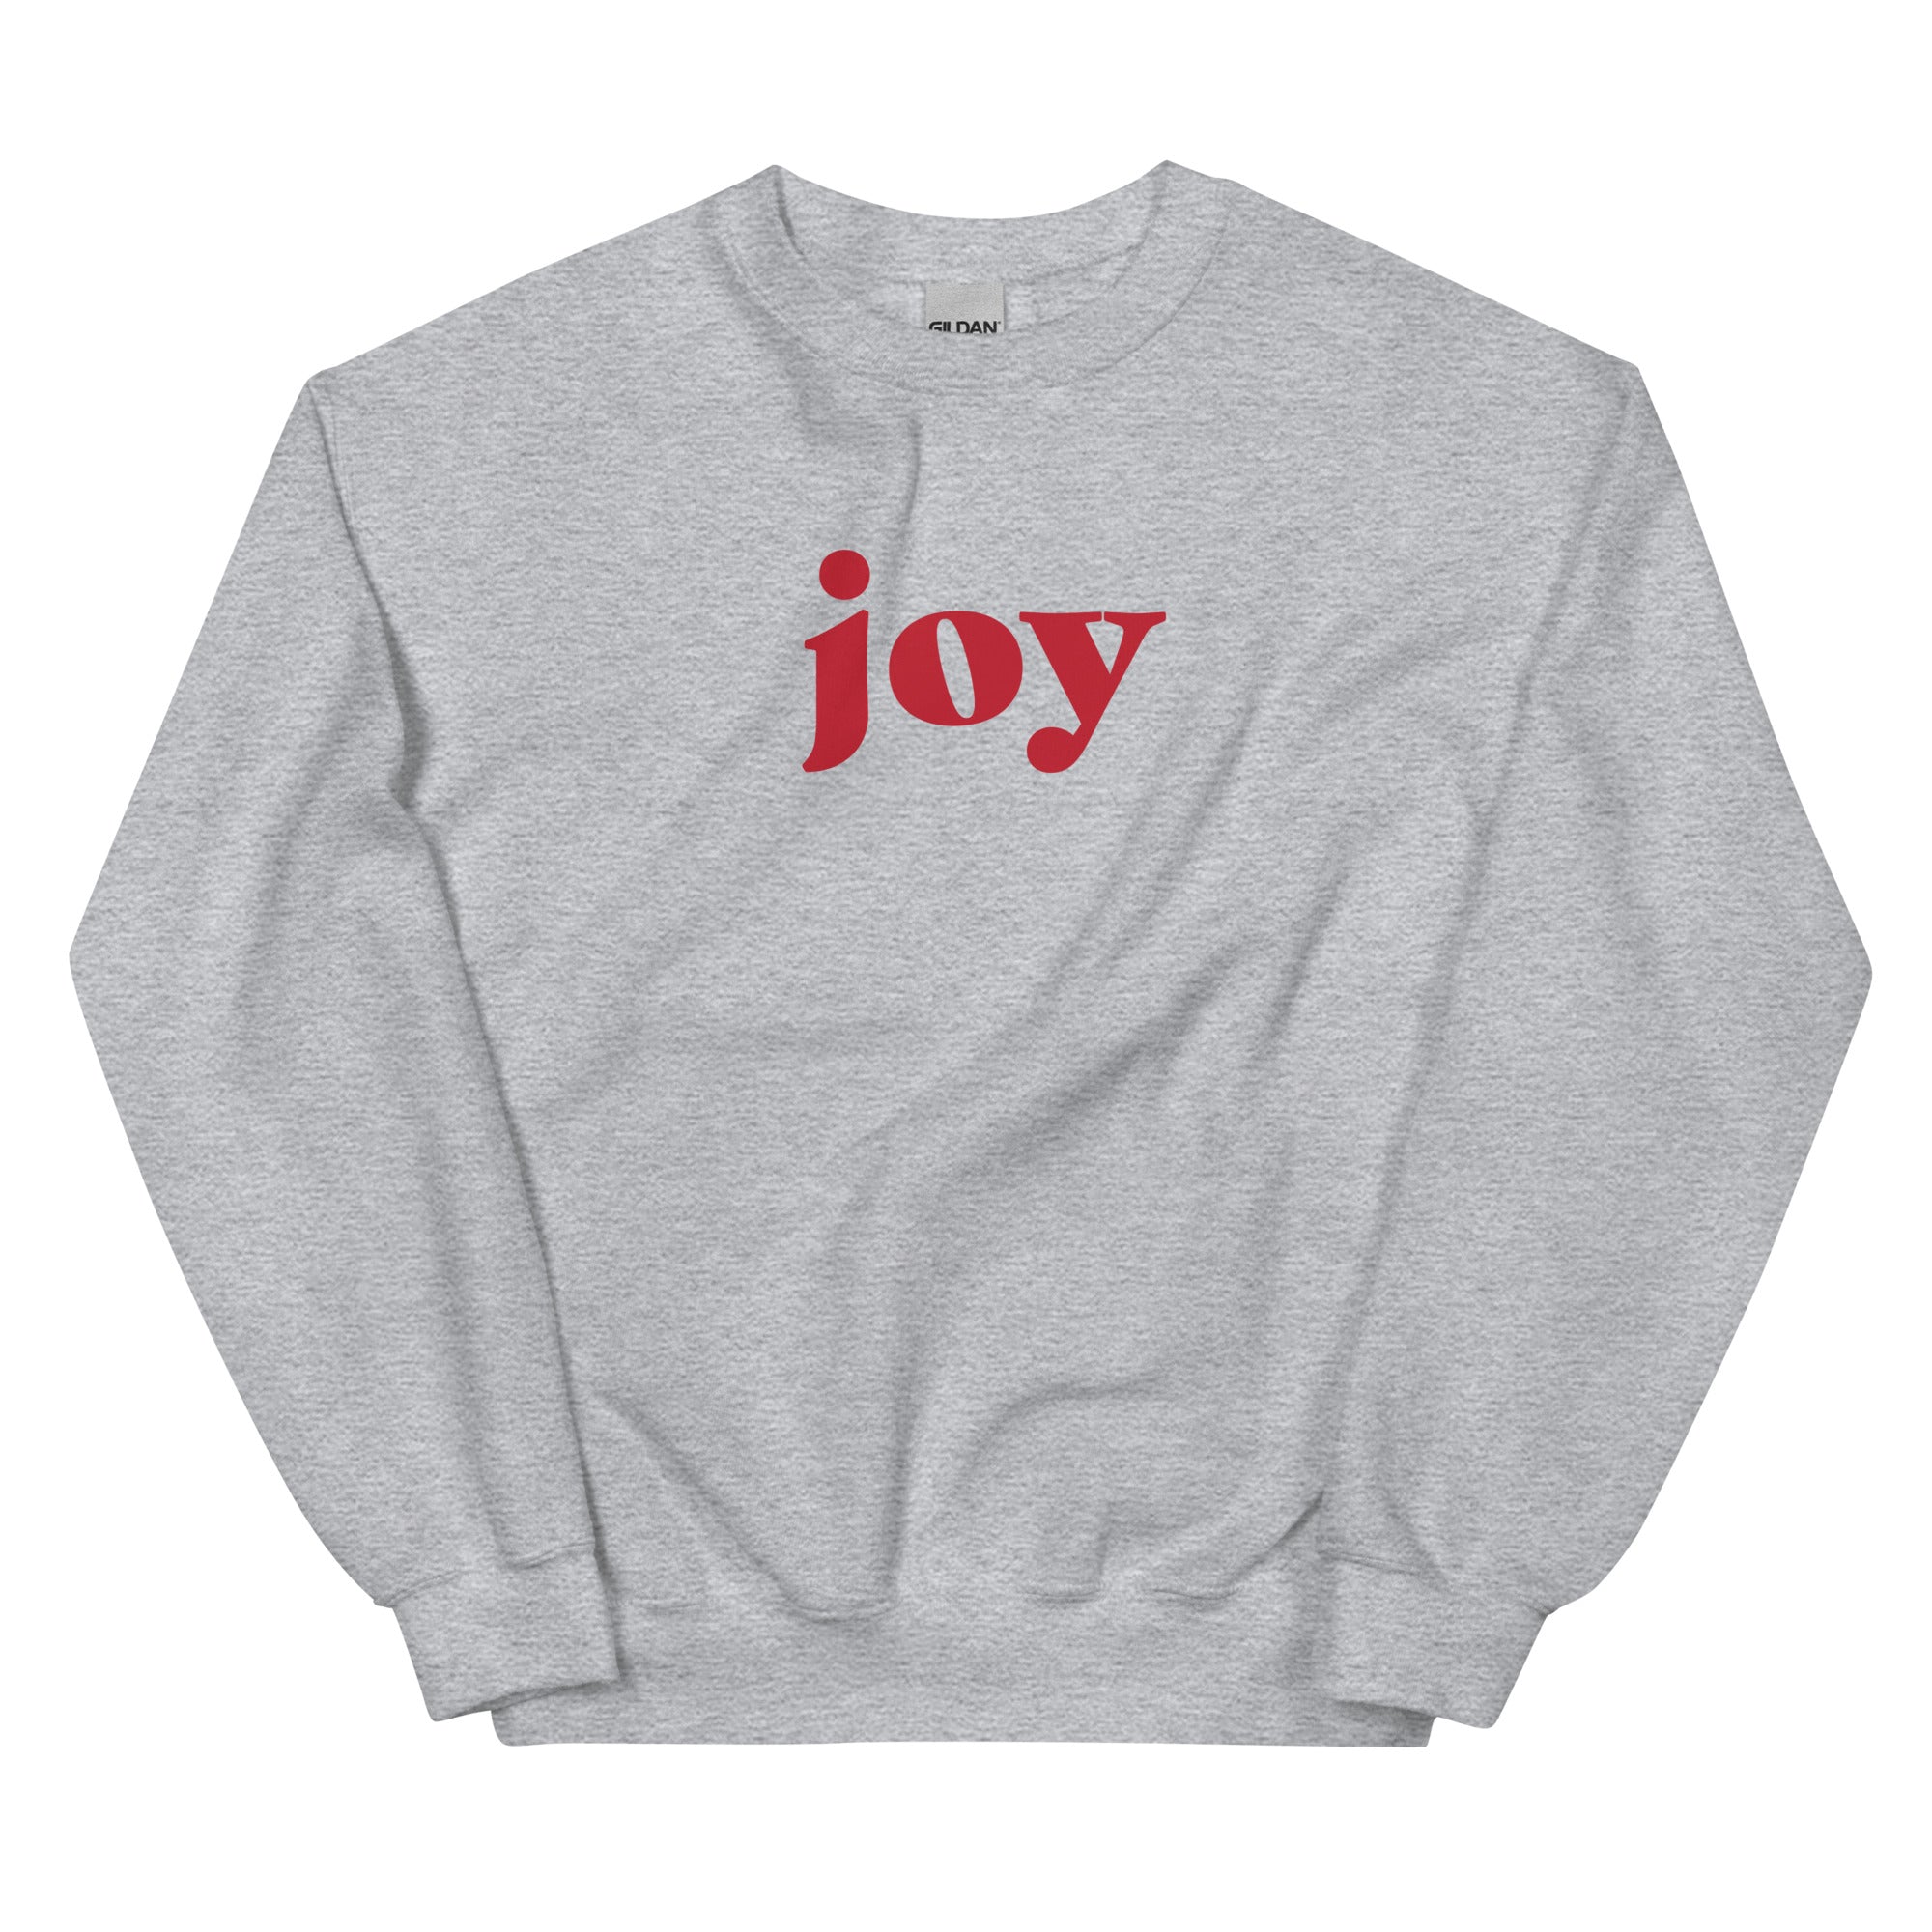 Joy Sweatshirt (Oatmeal & Grey)